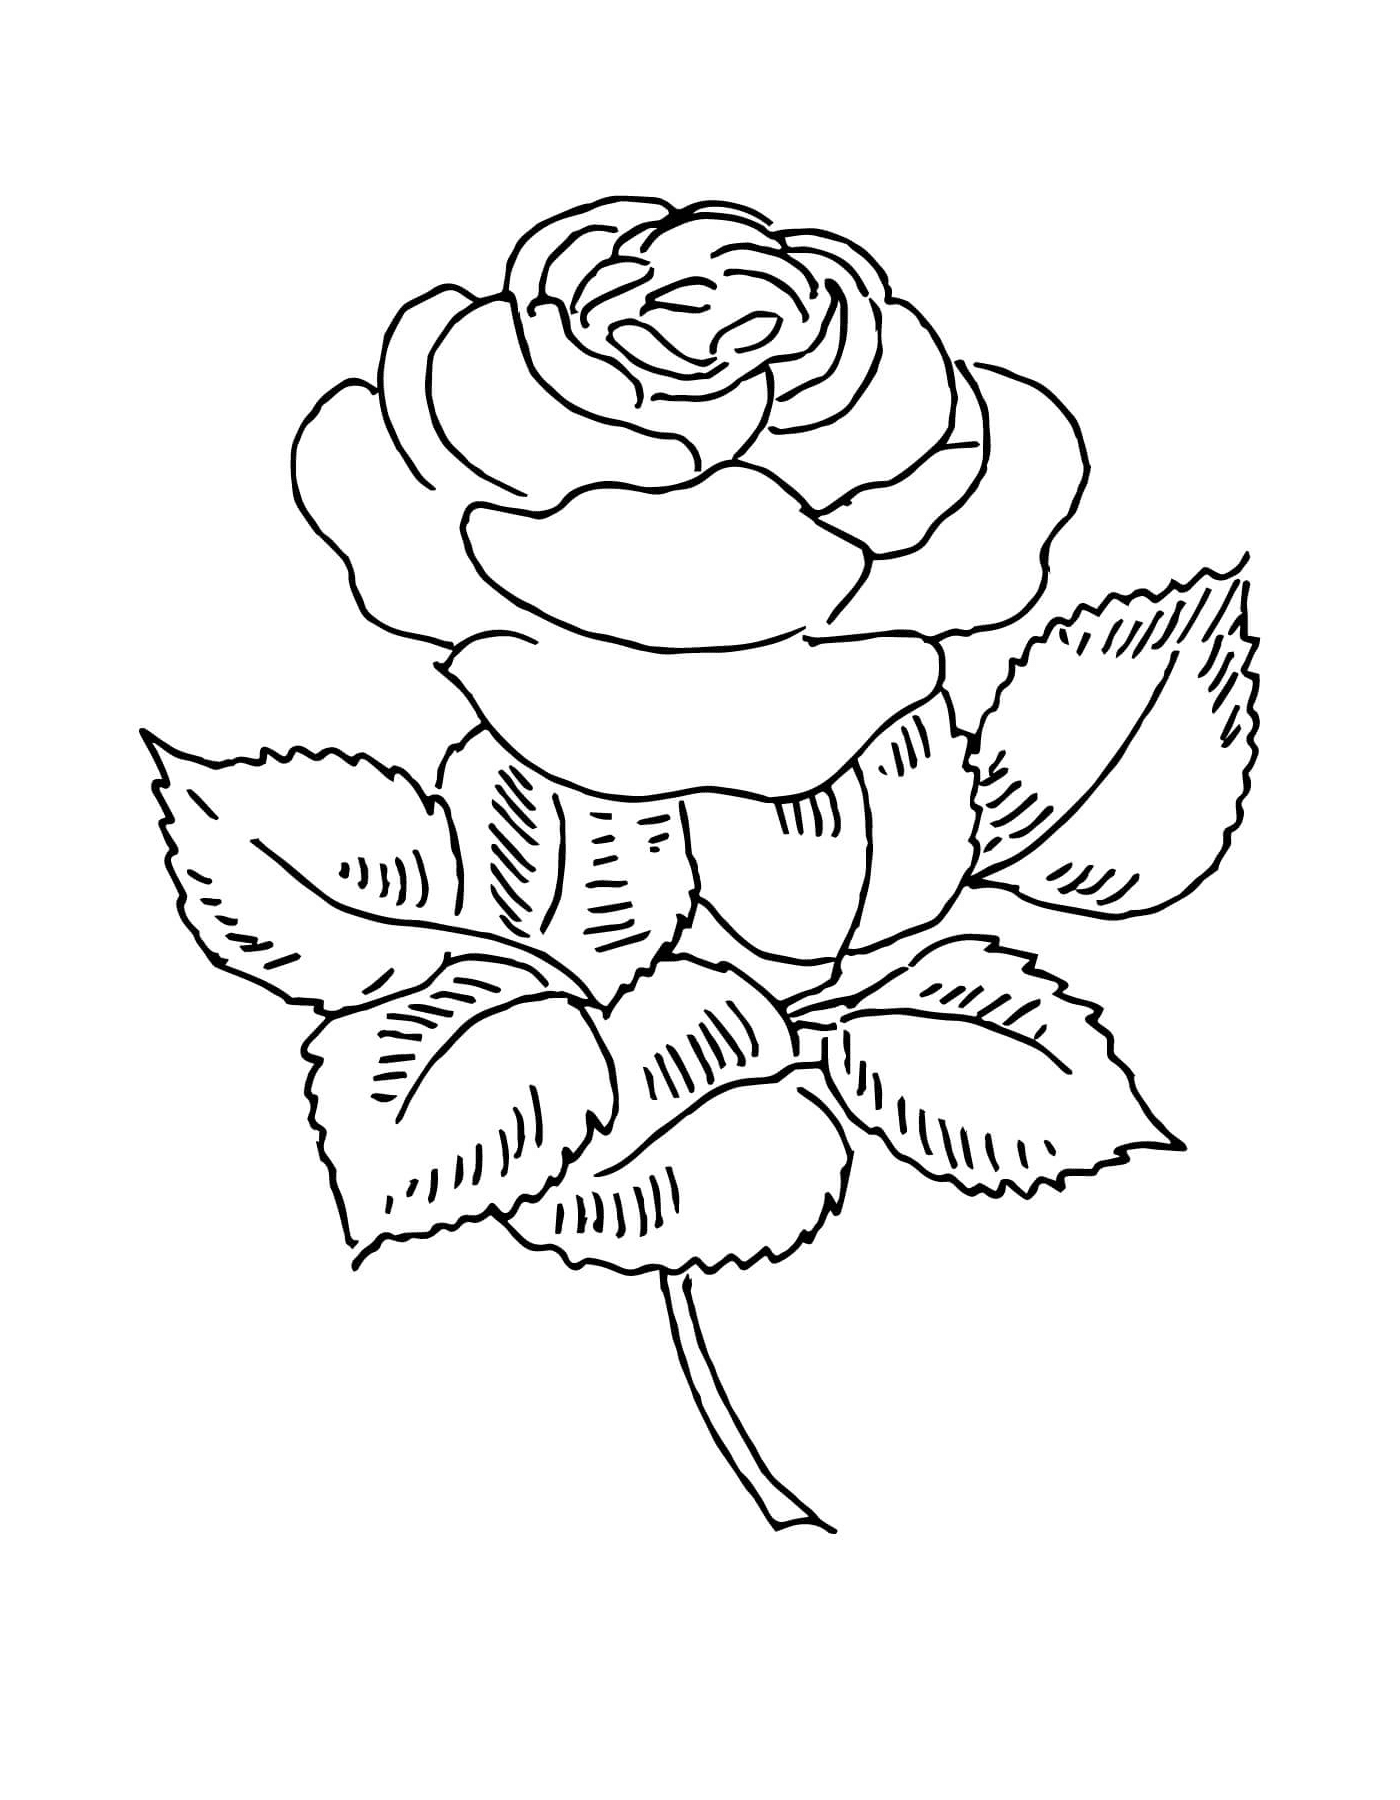  Splendid rose 